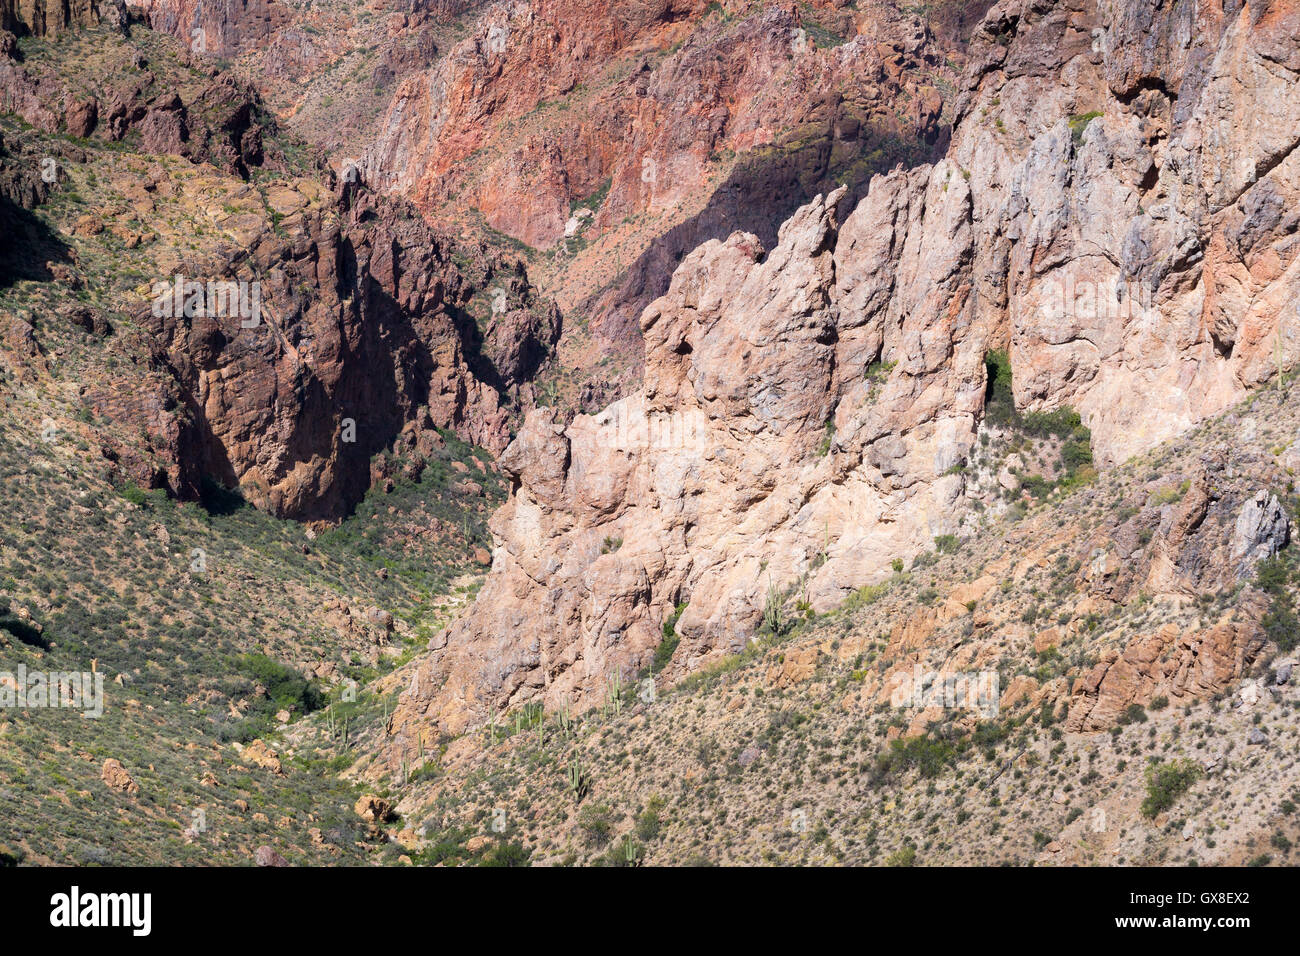 Grand vitrail d'affleurements rocheux avec des minéraux de la création d'un paysage coloré et rocky résumé. Gila River Canyons, Arizona Banque D'Images